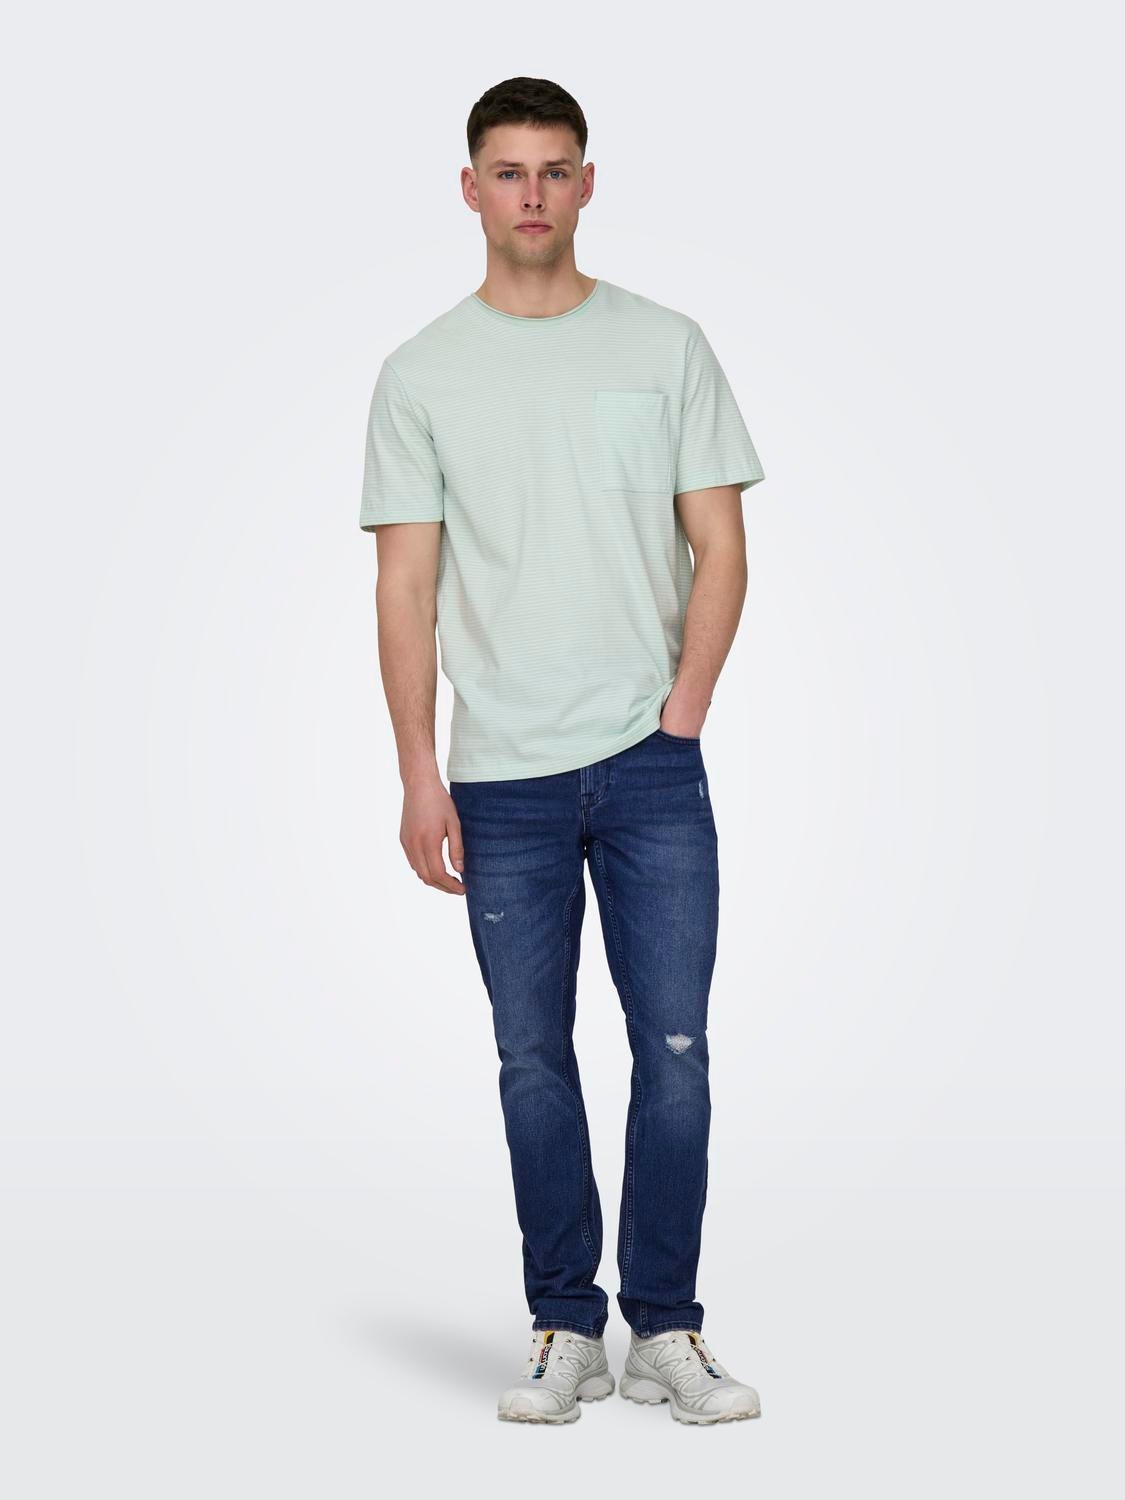 ONLY & SONS Slim Fit Middels høyt snitt Jeans -Dark Blue Denim - 22026456